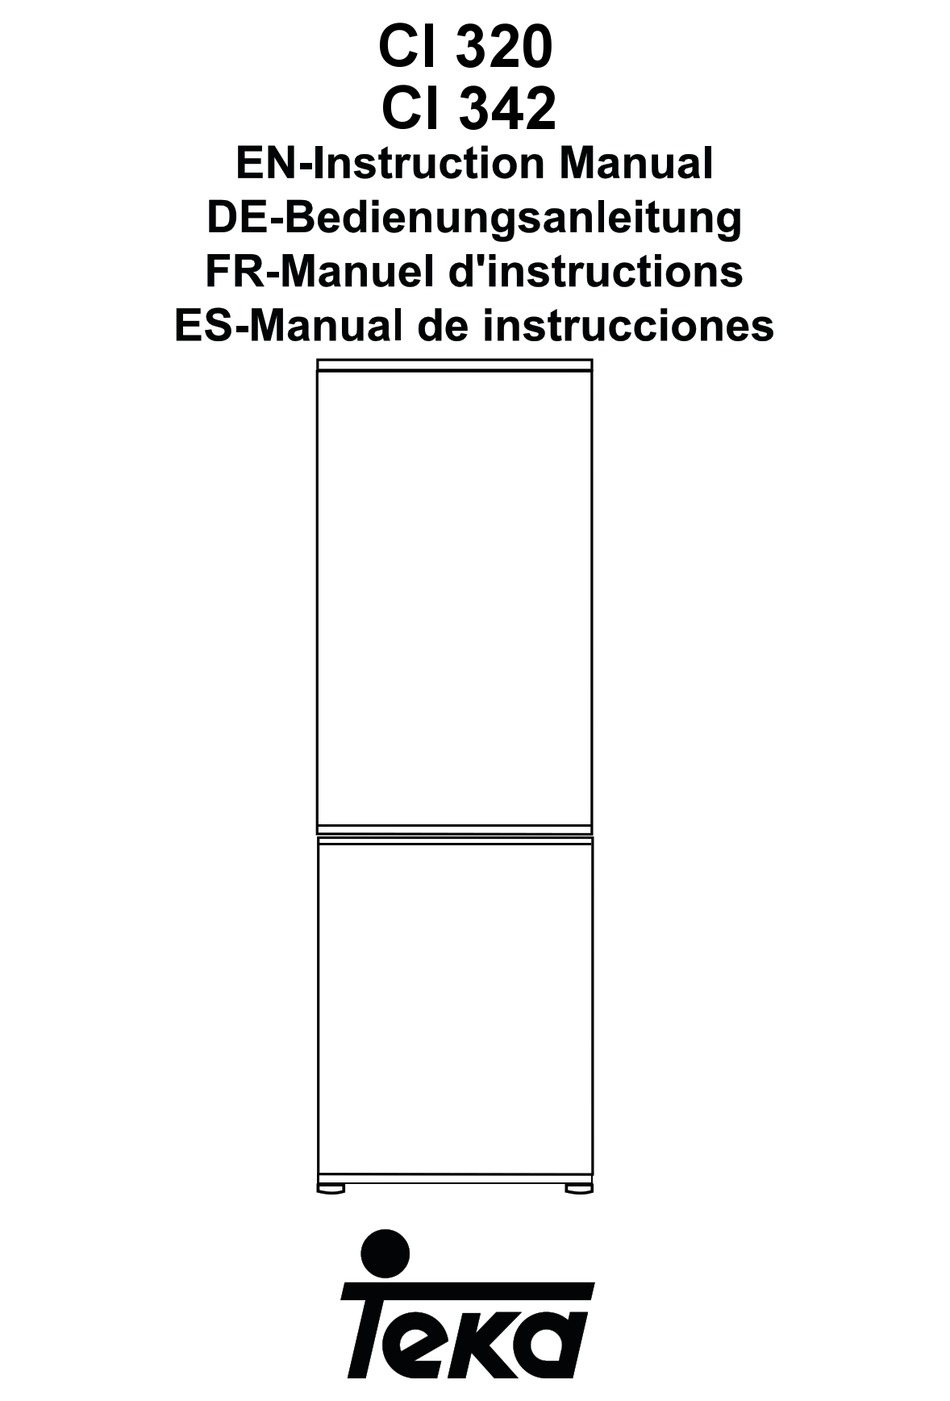 manual instrucciones teka nf-340c